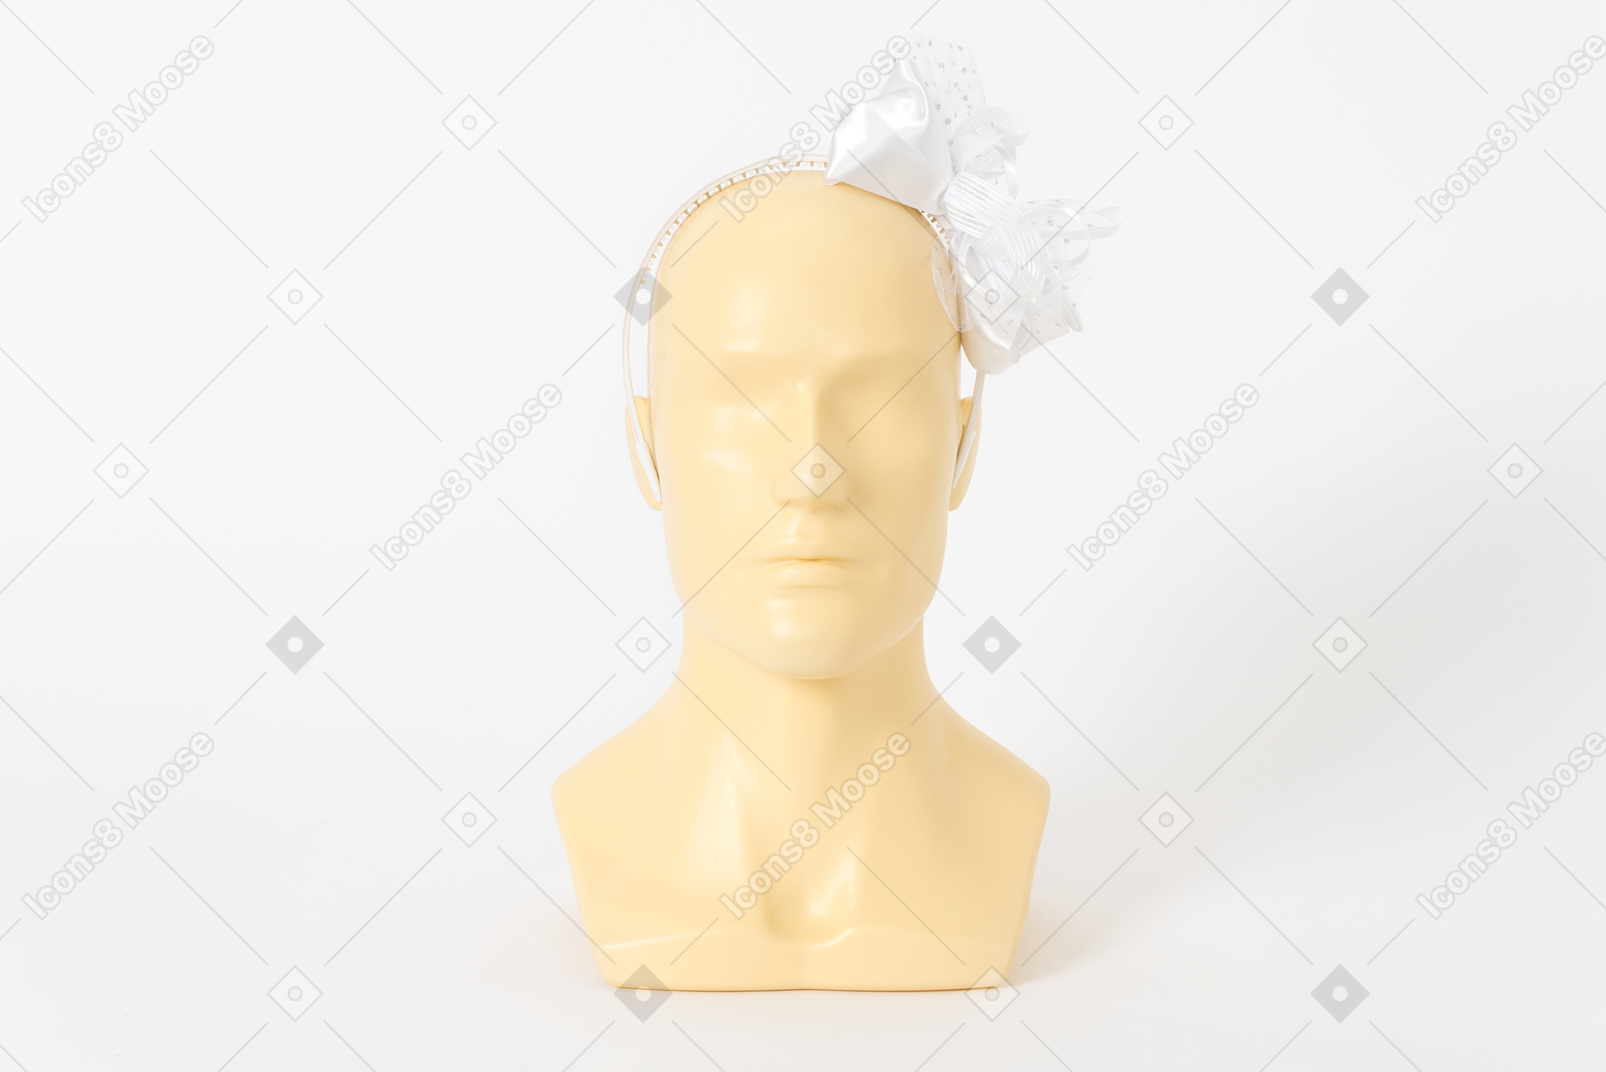 人体模特头上的蝴蝶结白色发带